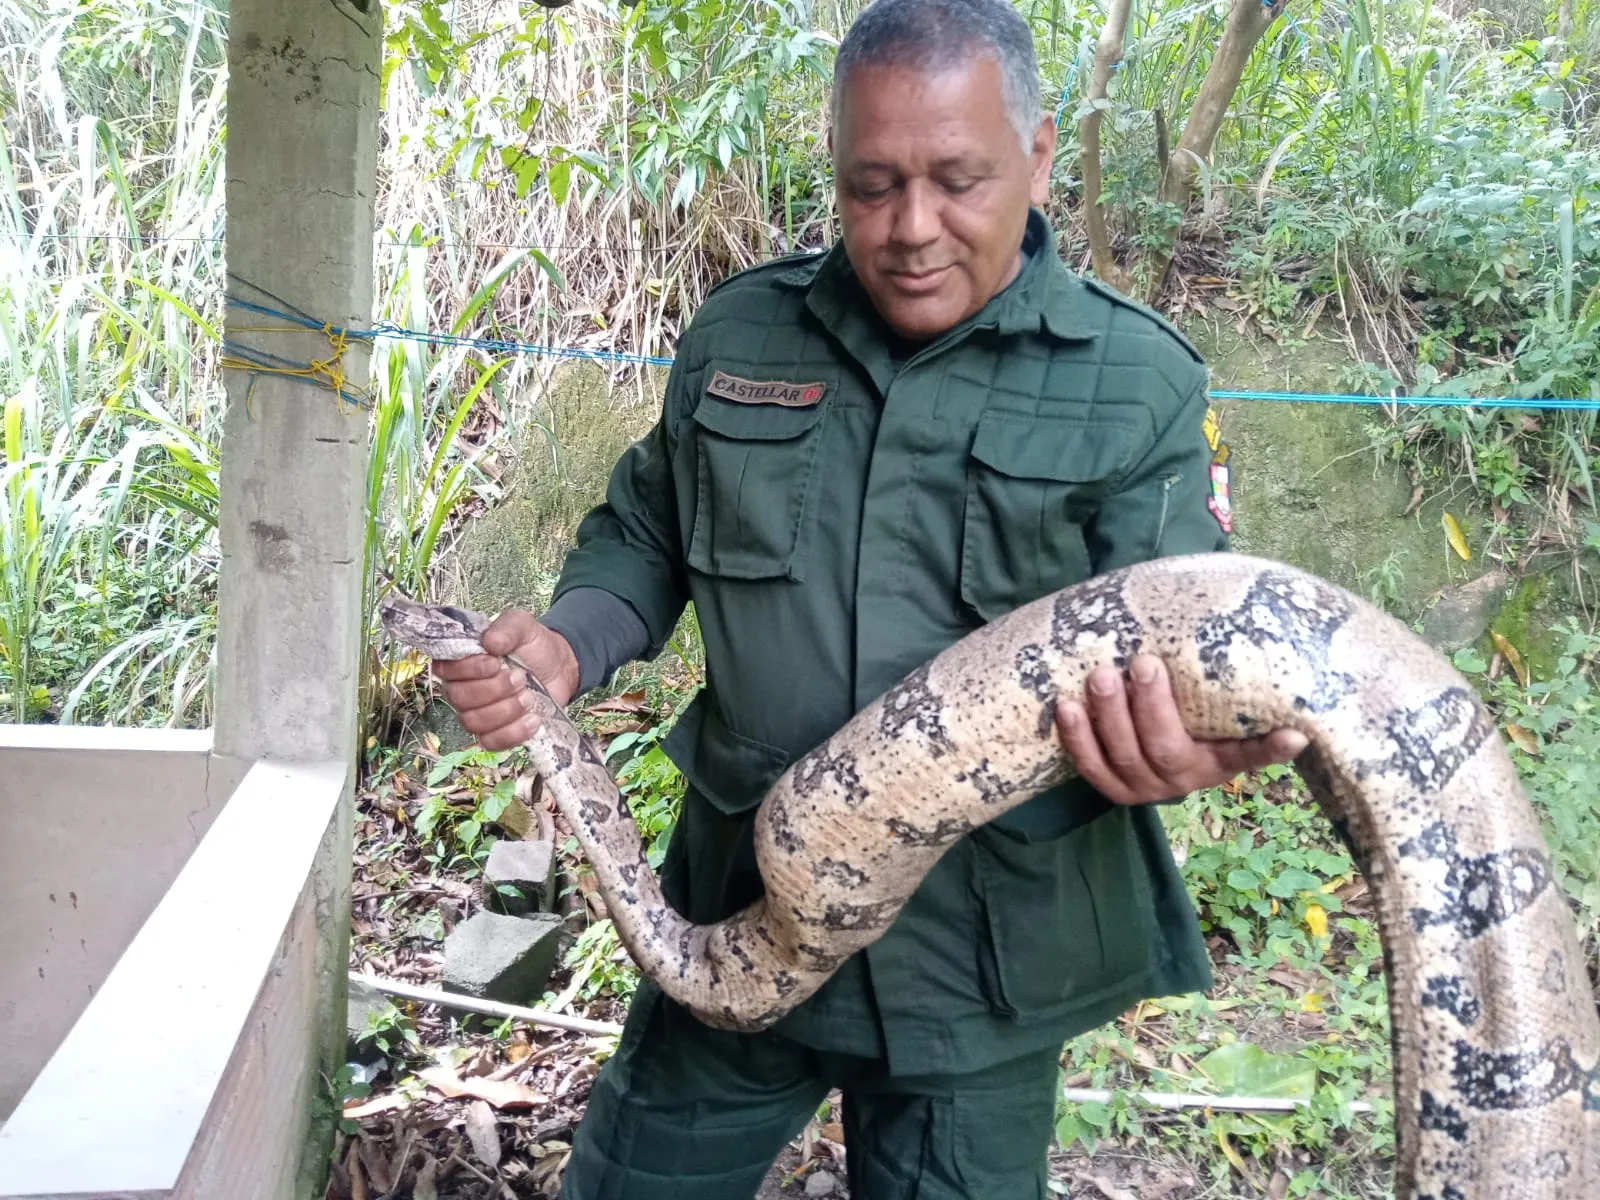 Os agentes fizeram o resgate da cobra, que estava em boas condições de saúde, e foi reintegrada ao seu habitat natural